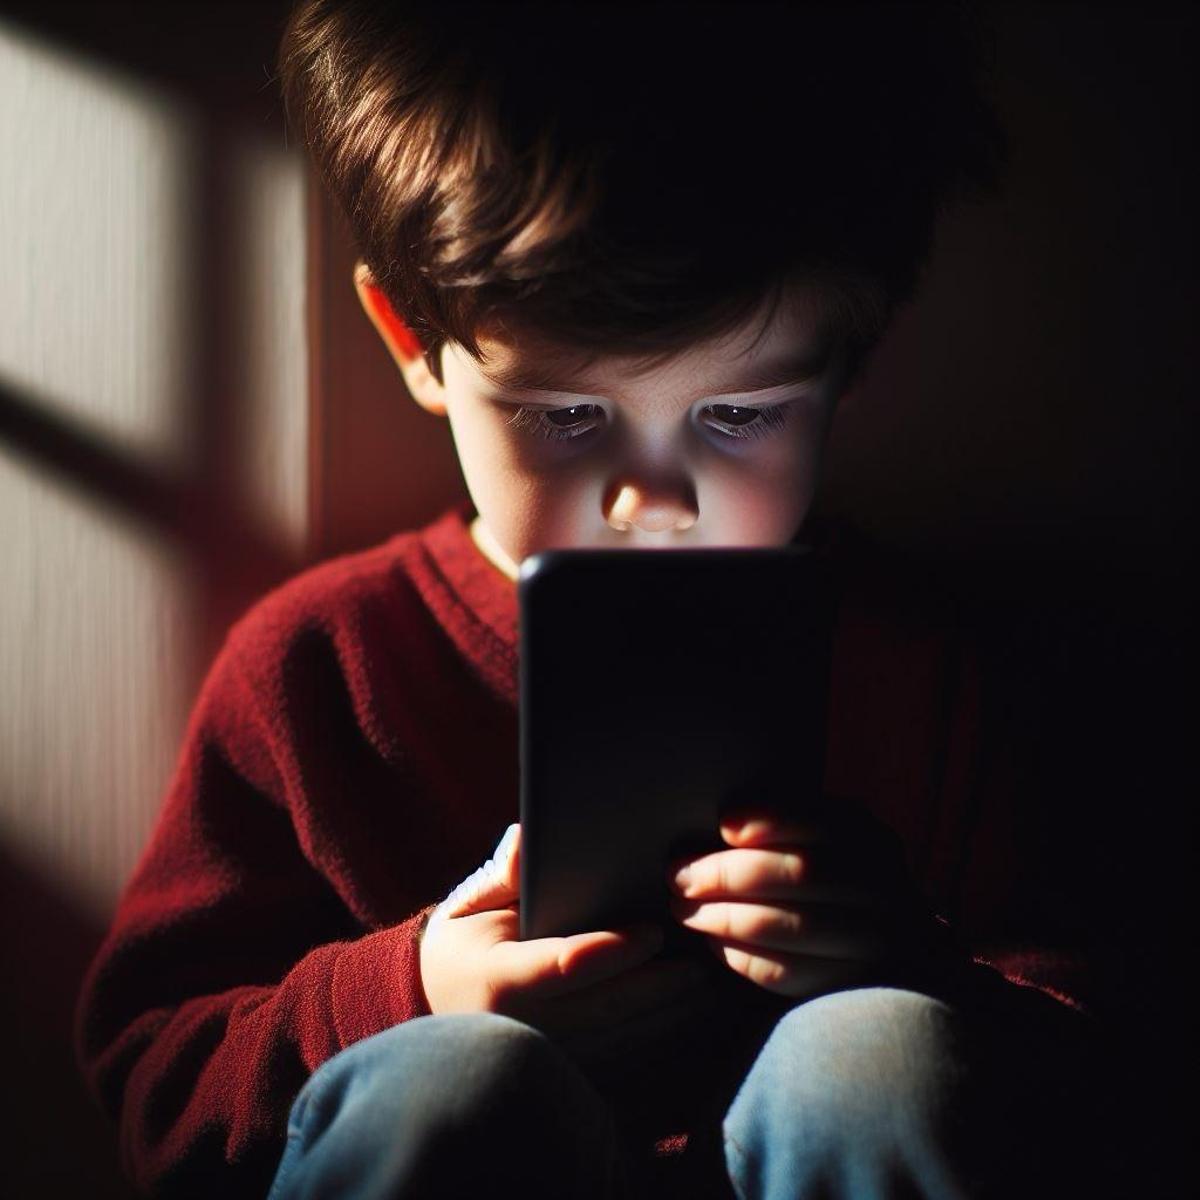 Un menor de edad mirando el móvil a escondidas de sus padres